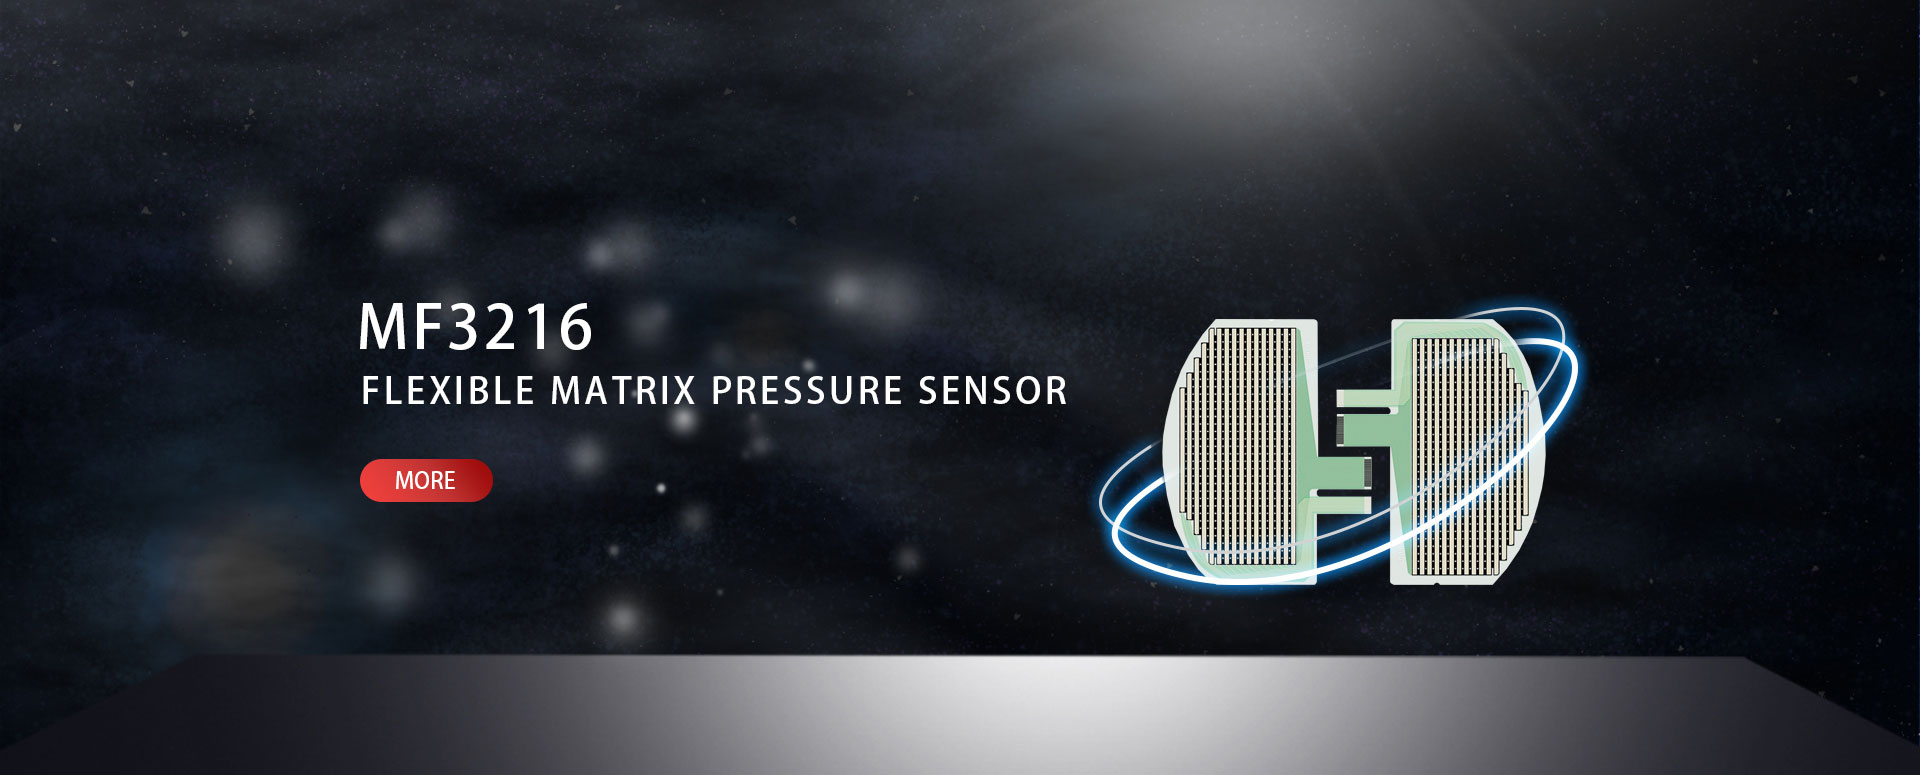 MF3216 Flexible Matrix Pressure Sensor